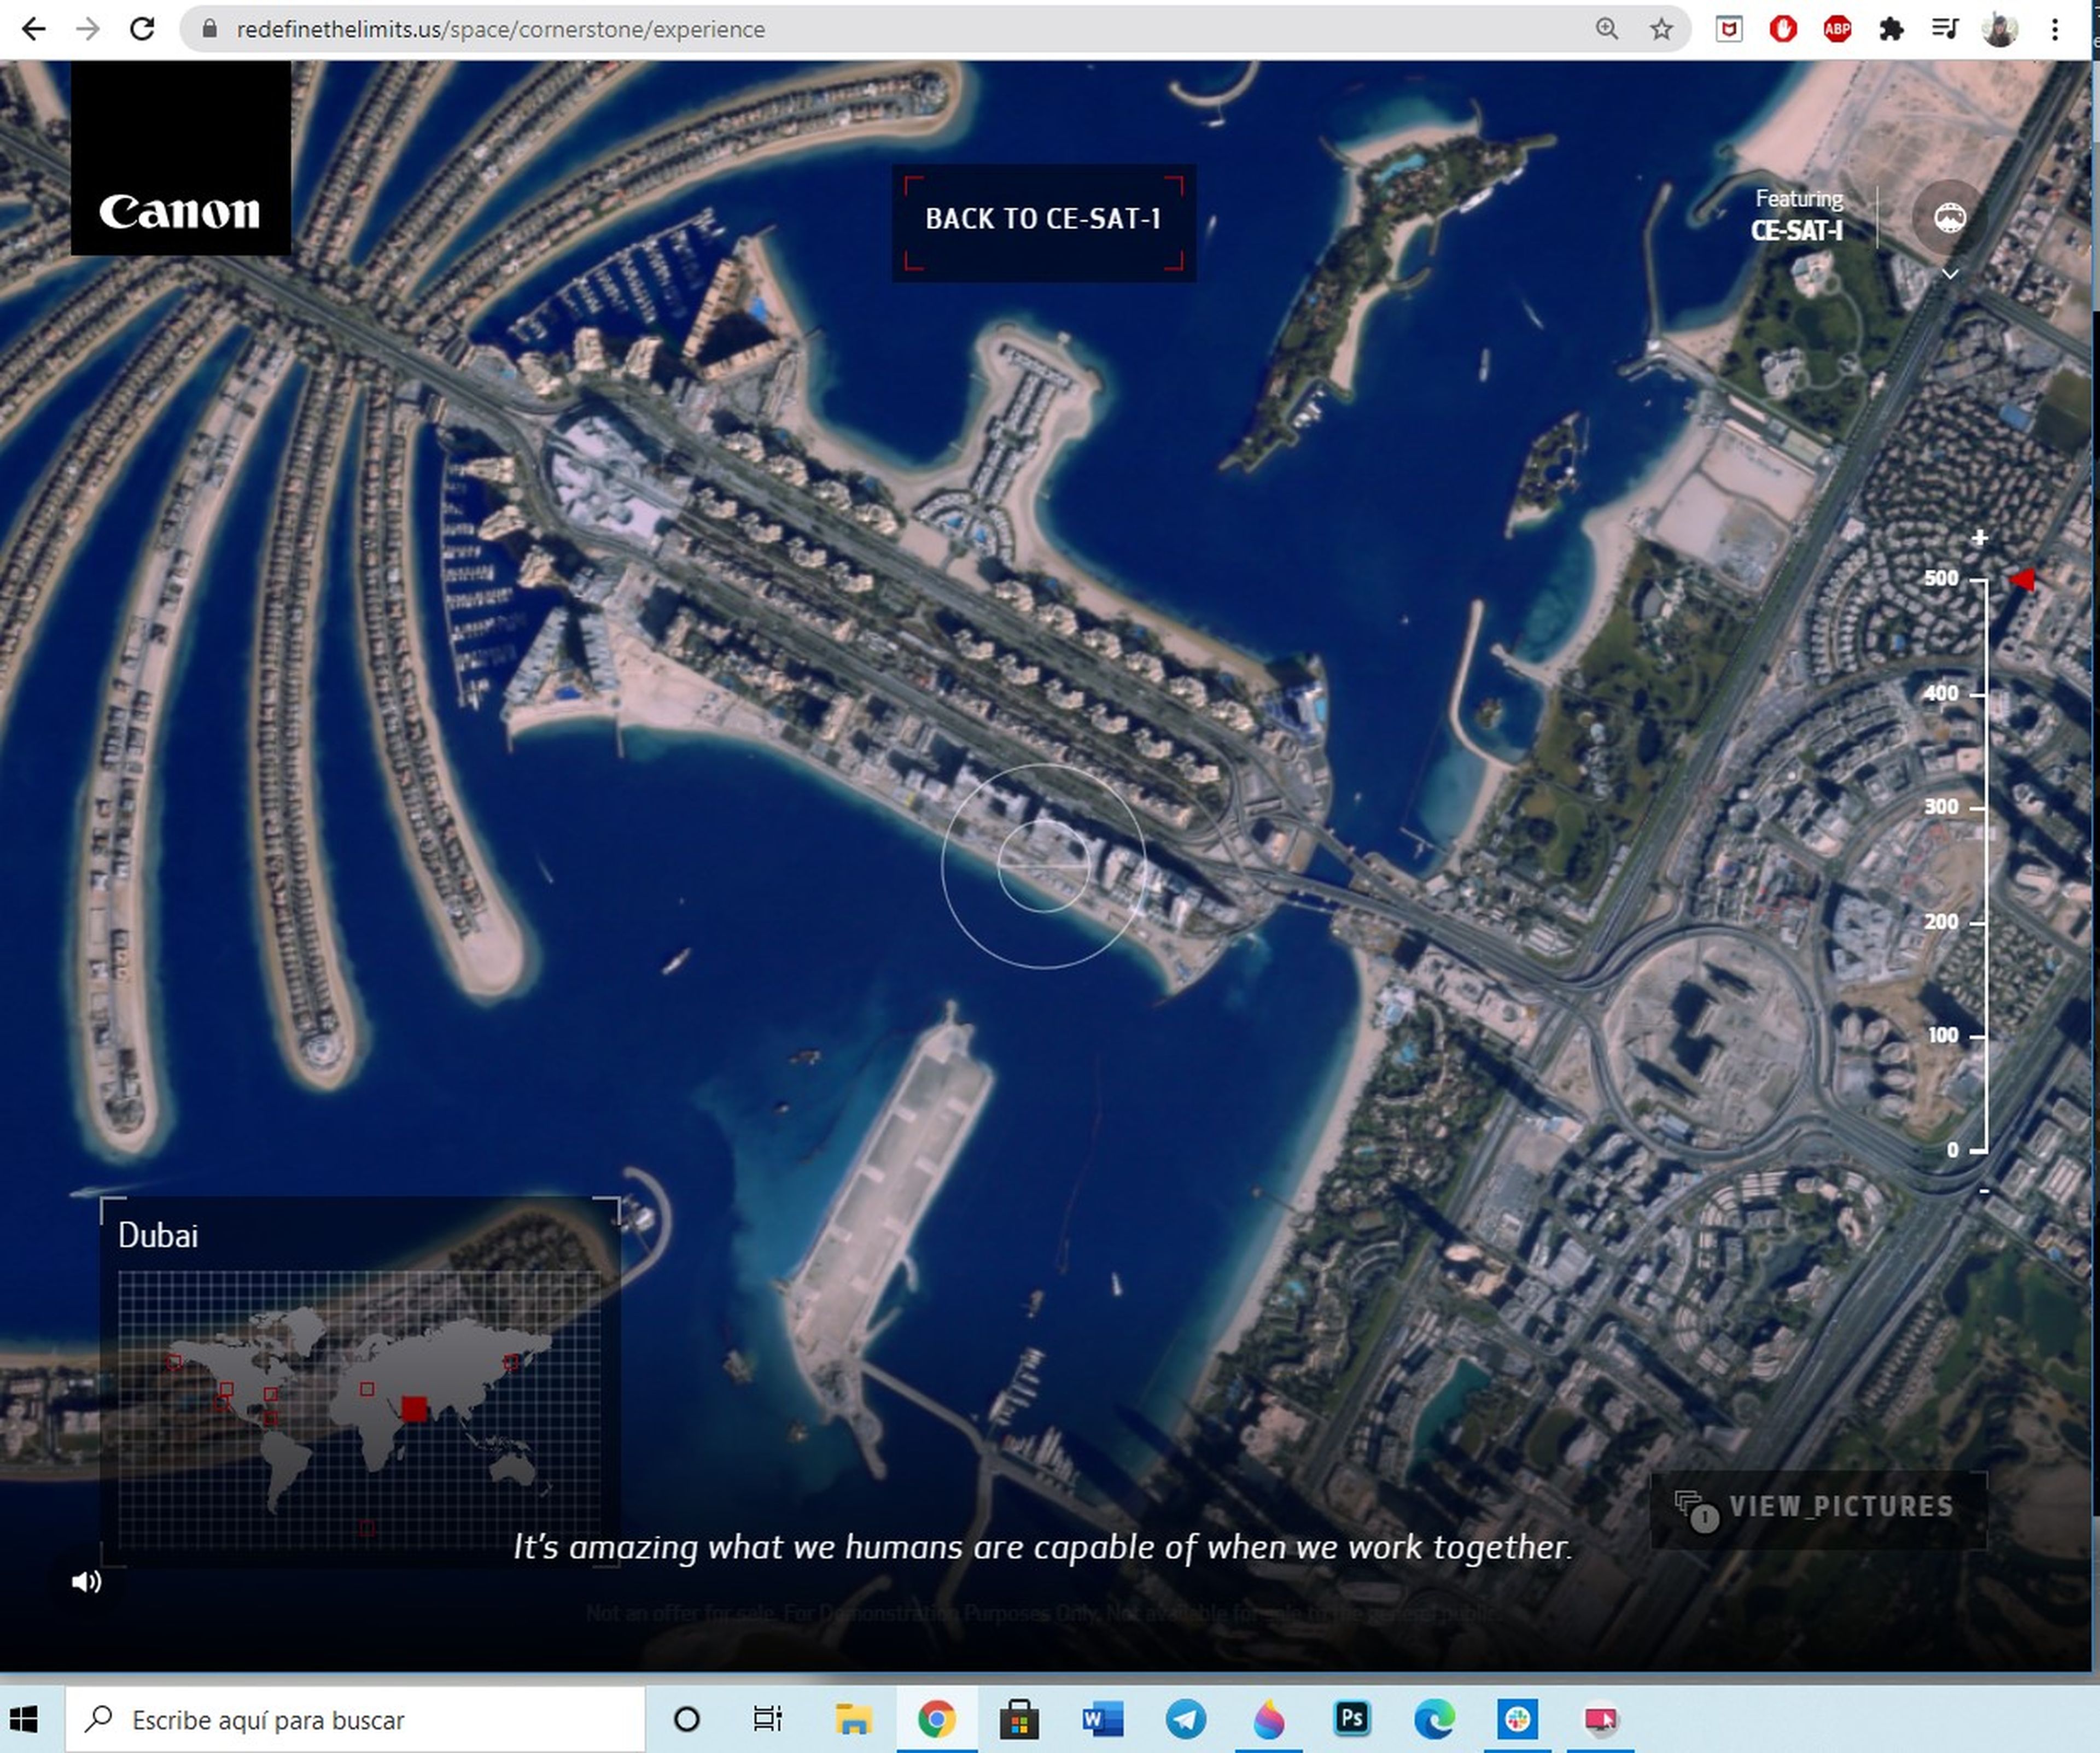 Canon ha lanzado una web con la que podemos hacer fotos desde un satélite de verdad